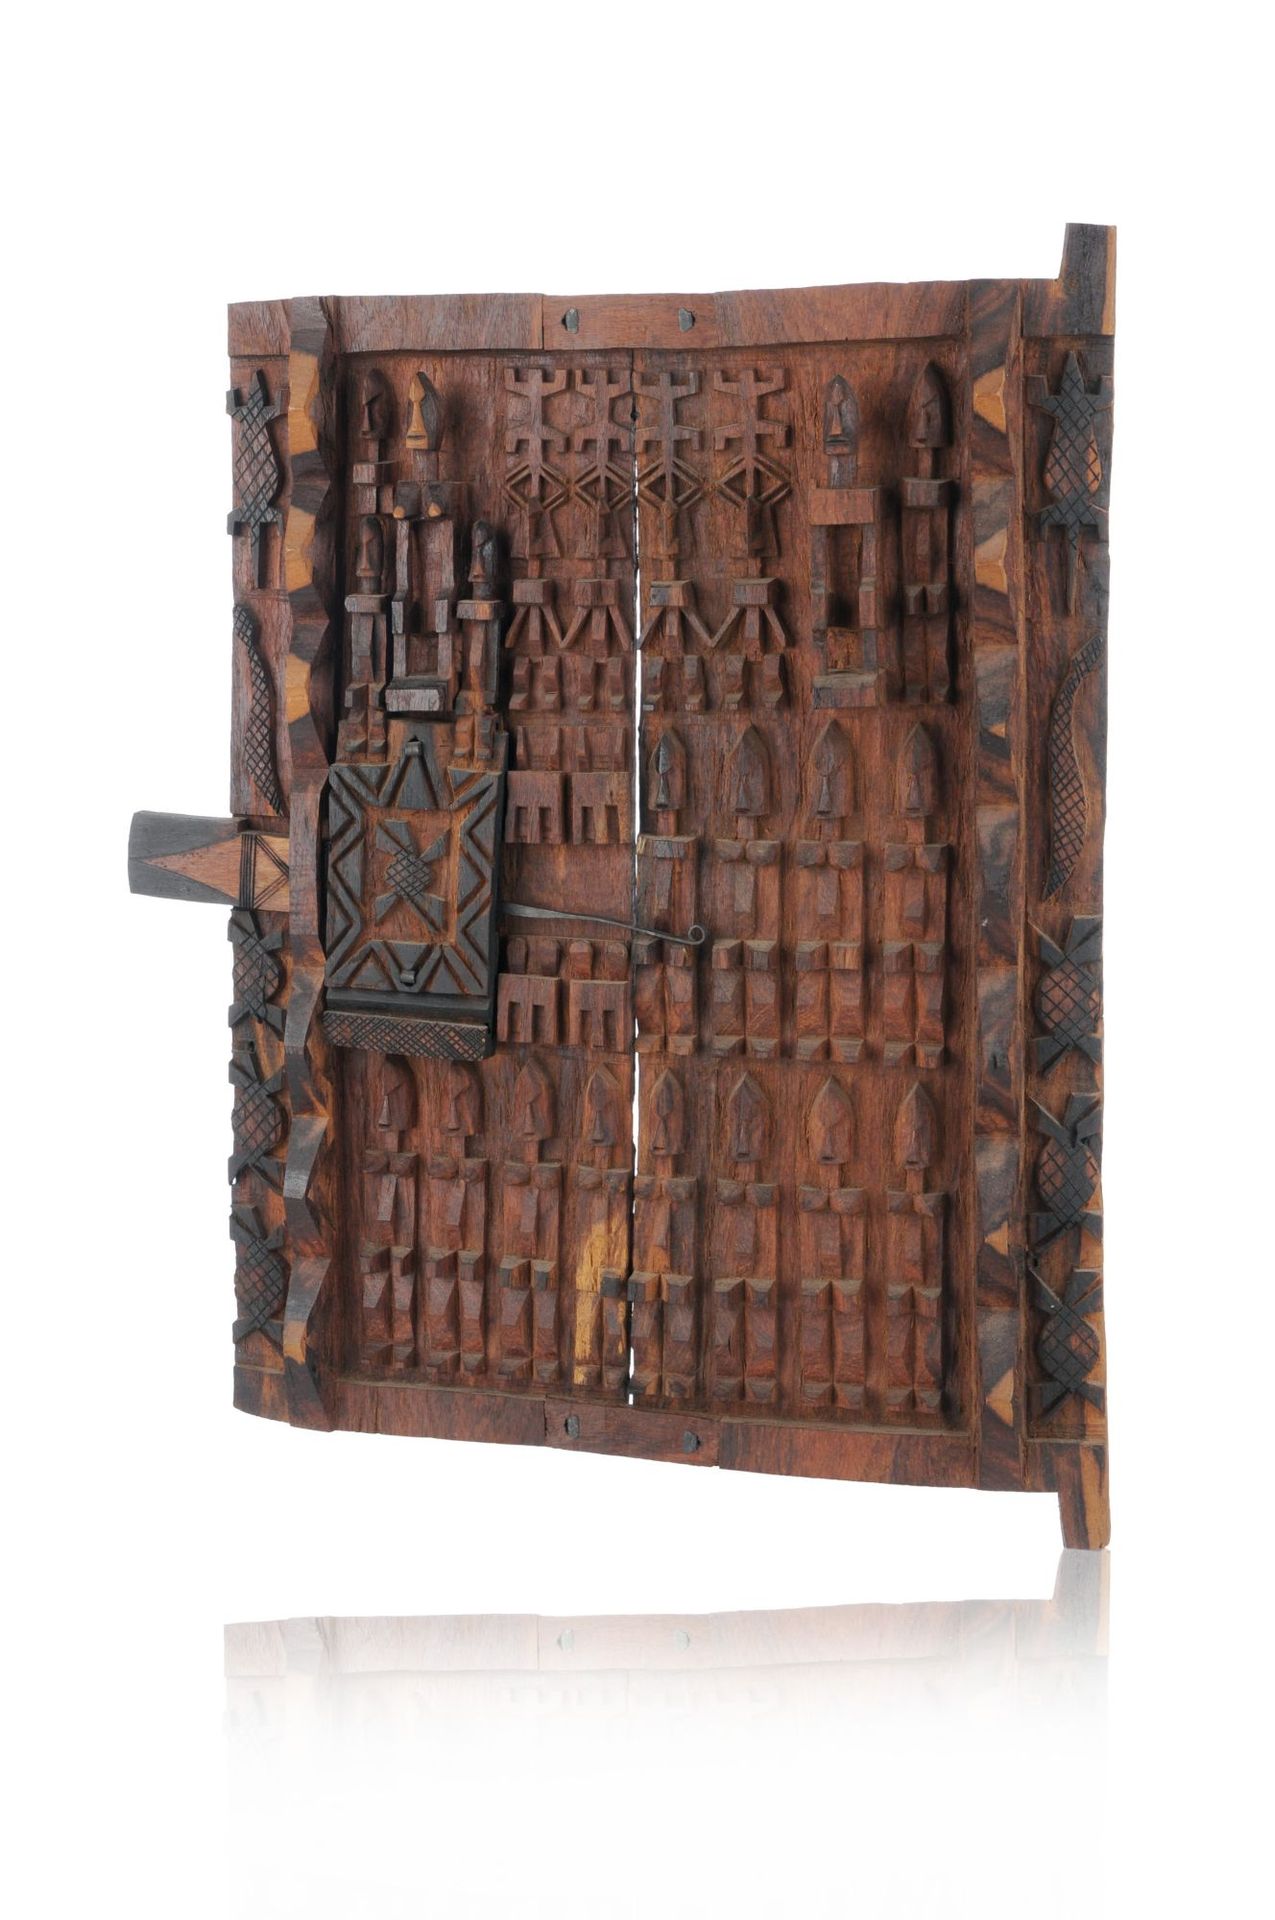 Null Modelltür eines Schreines. Wohl Dogon, Mali. 20. Jh.
Holz, geschnitzt, rotb&hellip;